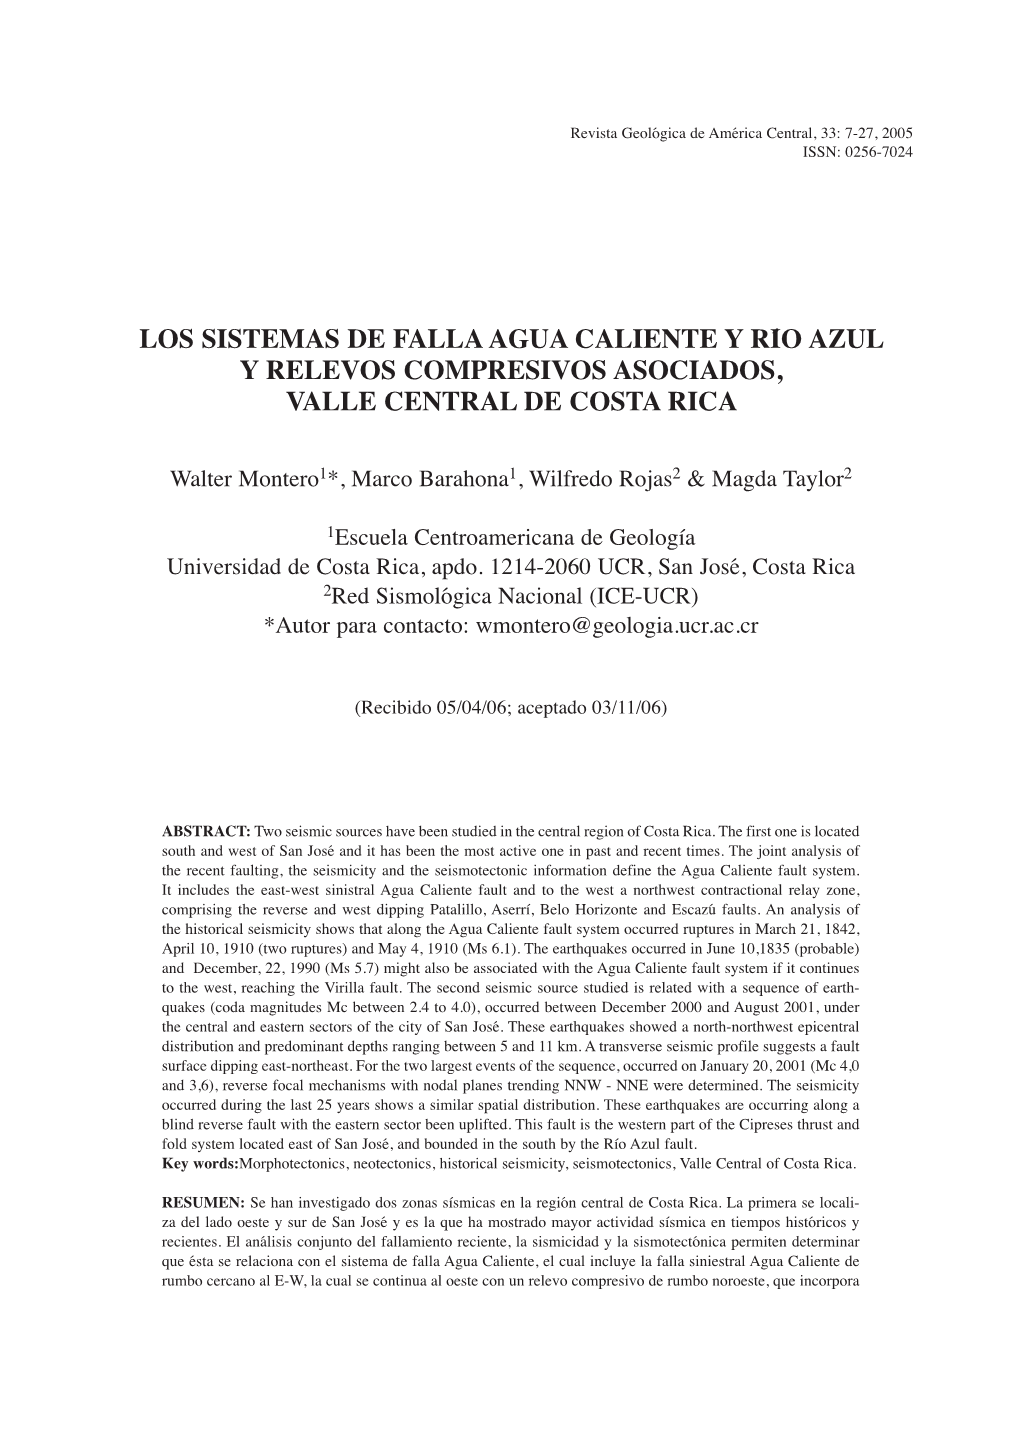 Los Sistemas De Falla Agua Caliente Y Río Azul Y Relevos Compresivos Asociados, Valle Central De Costa Rica